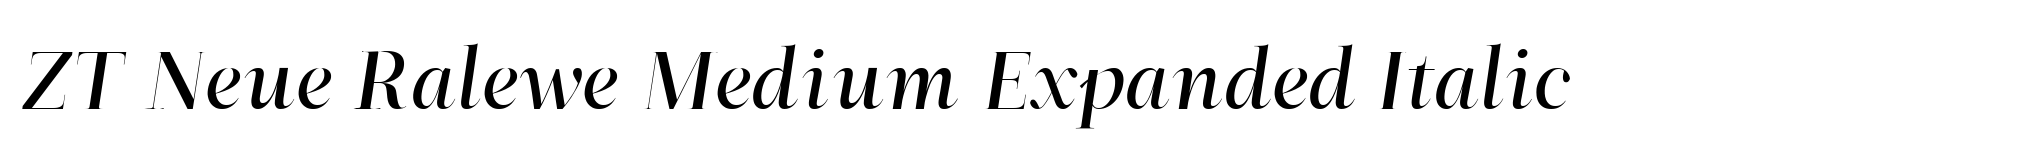 ZT Neue Ralewe Medium Expanded Italic image